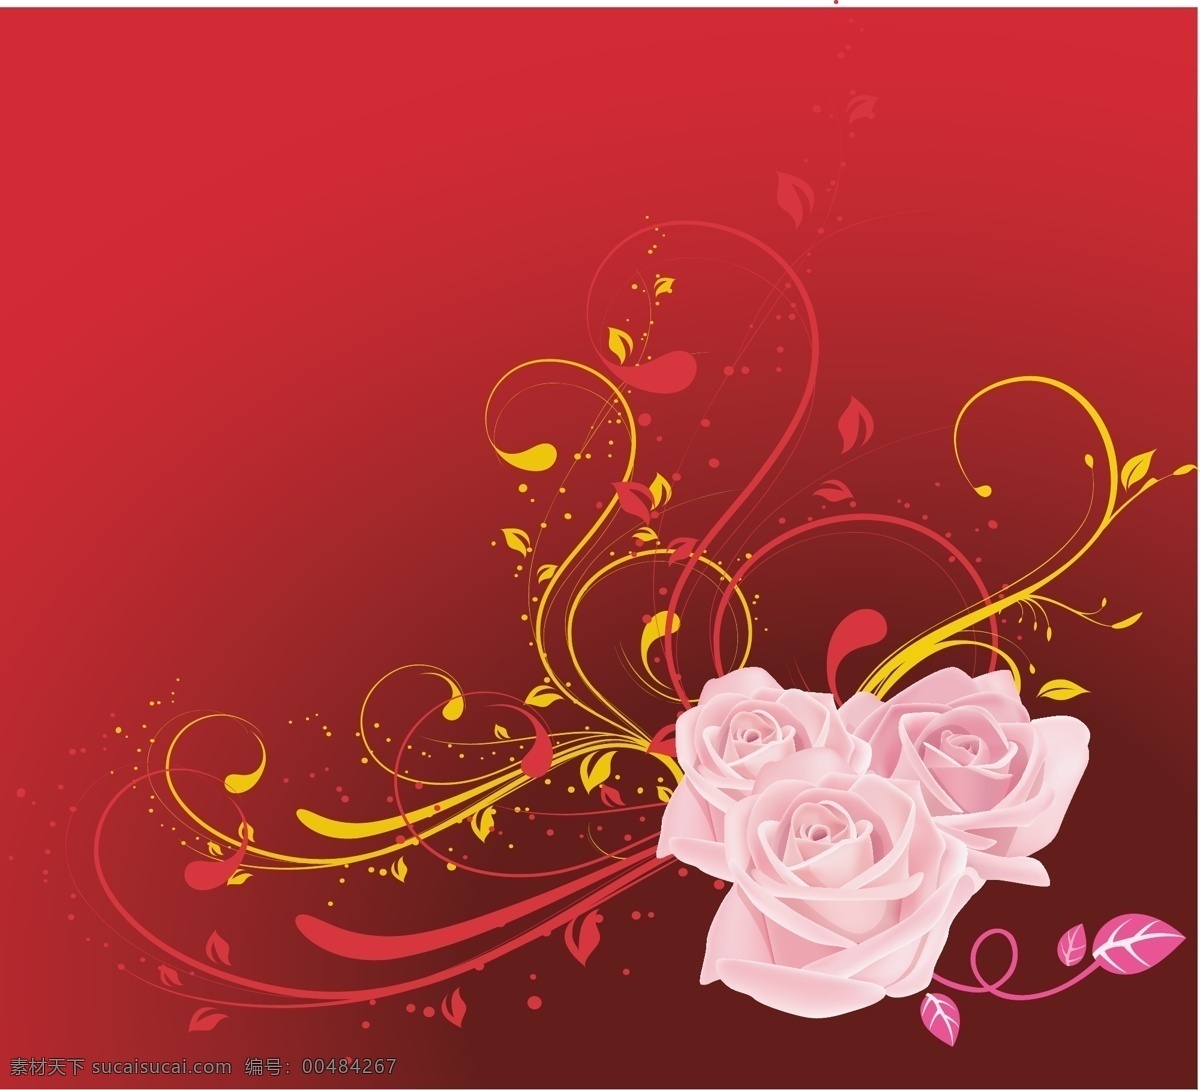 粉红 玫瑰红 摘要 背景 矢量 web 插画 创意 粉红色的 花 玫瑰 免费 图形 病 媒 生物 时尚 独特的 原始的 高质量 质量 新鲜的 人工智能 红色的 漩涡 psd源文件